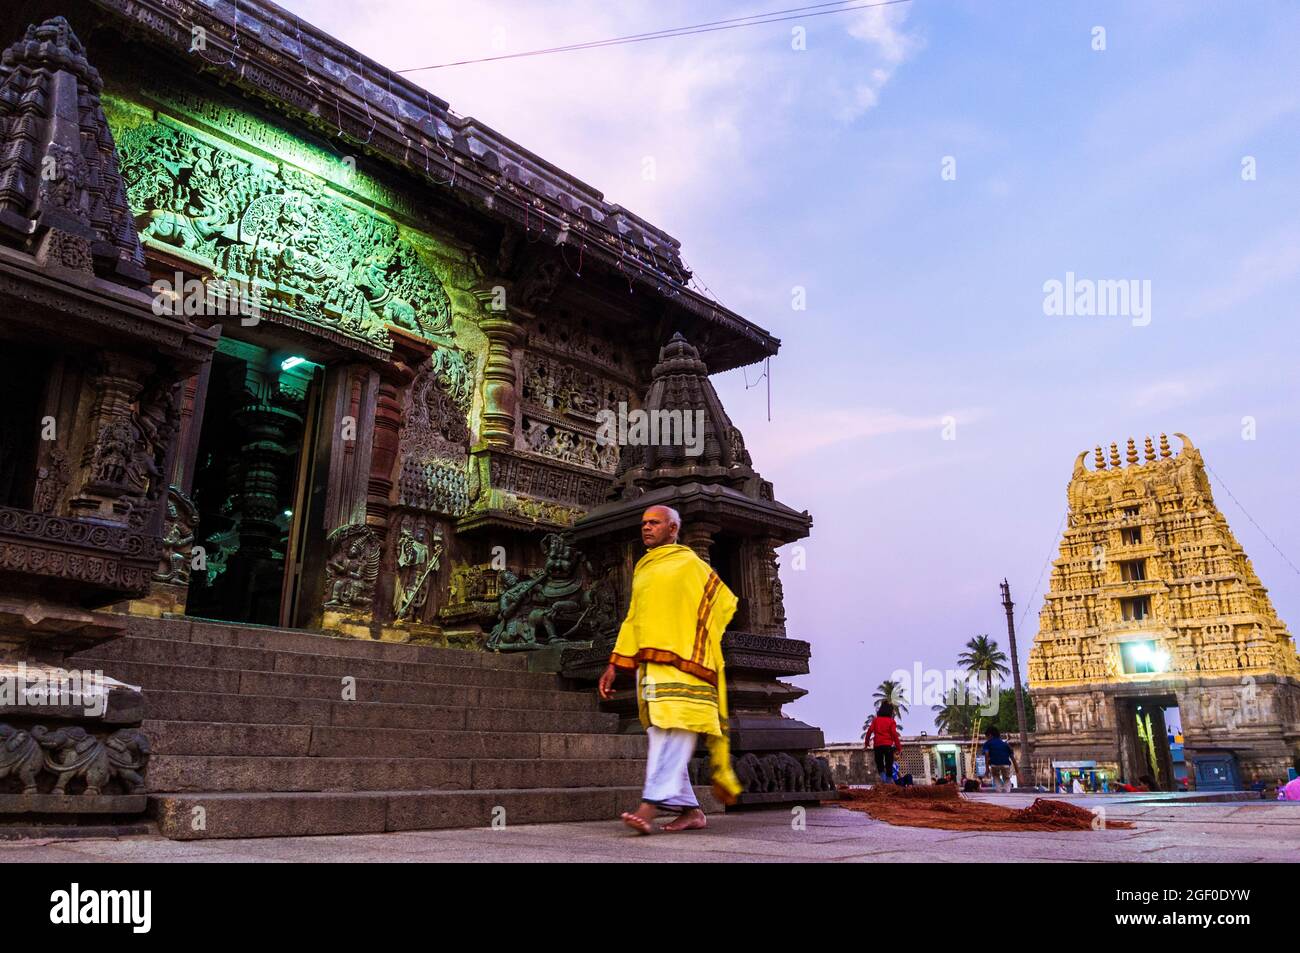 Belur, Karnataka, India : Templo Channakeshava del siglo 12th. Un sacerdote hindú circunbaliza al atardecer el templo principal de Kesava. Foto de stock